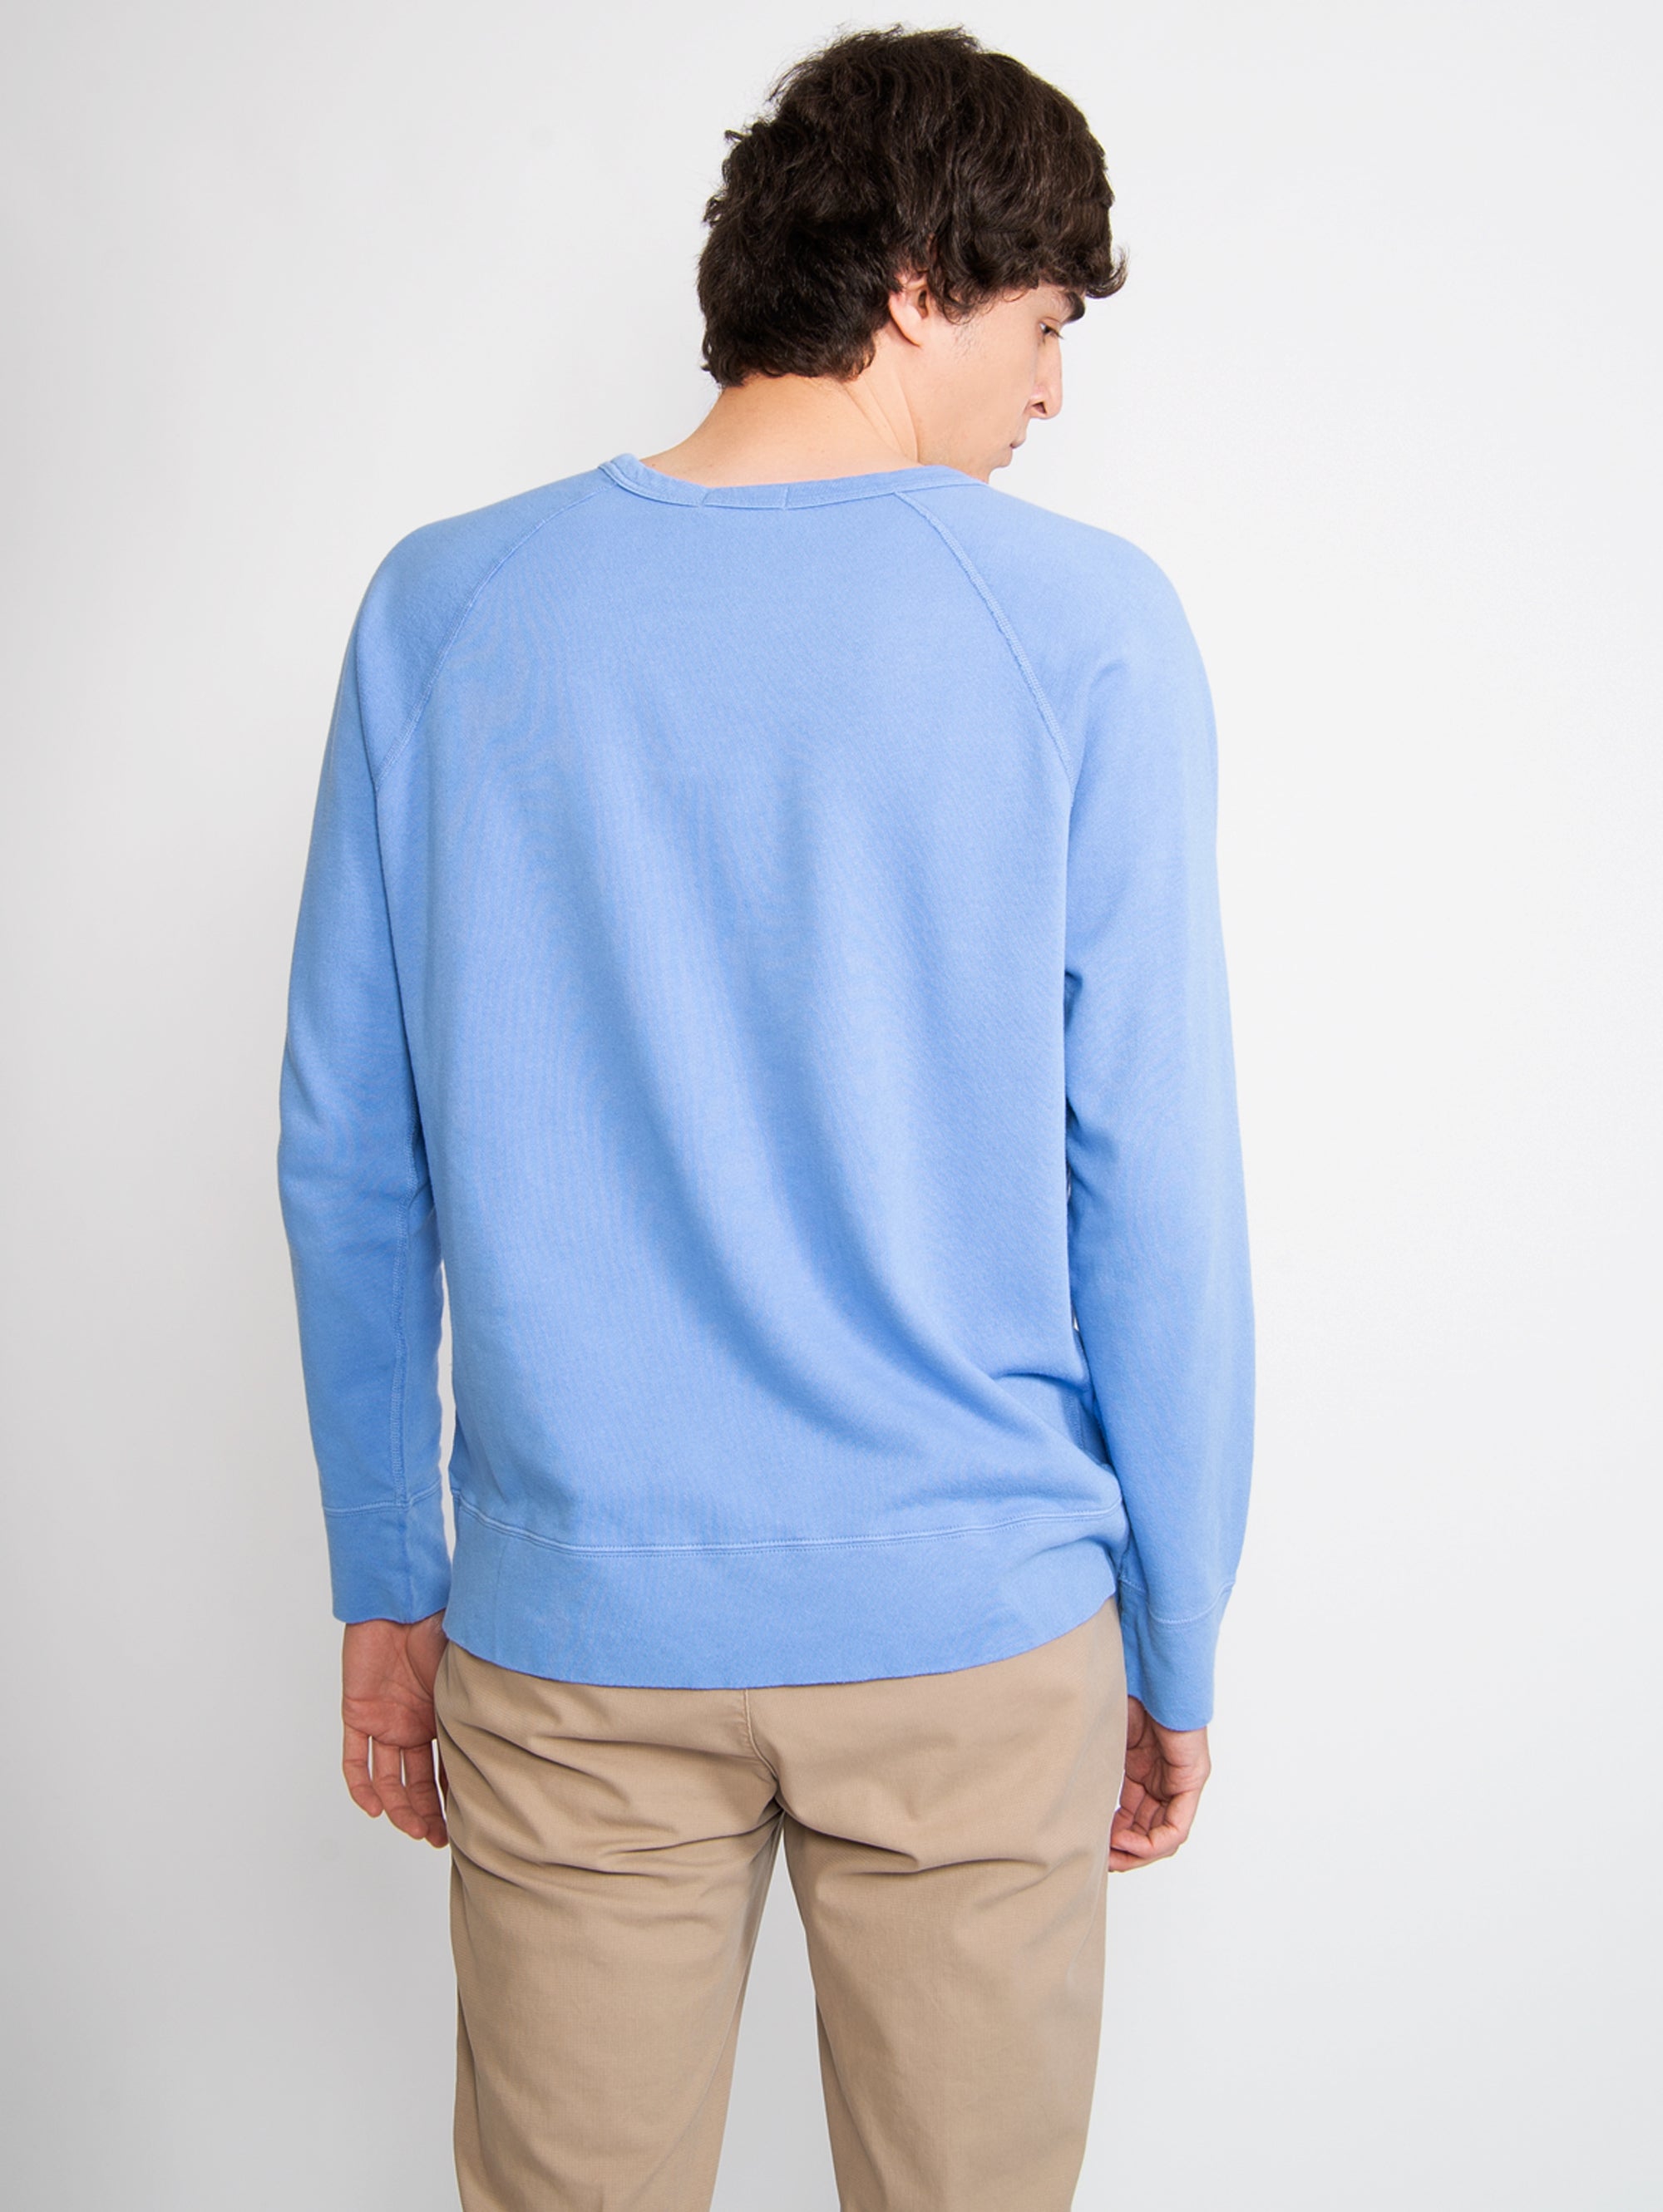 Rundhals-Sweatshirt mit blauen Raglanärmeln